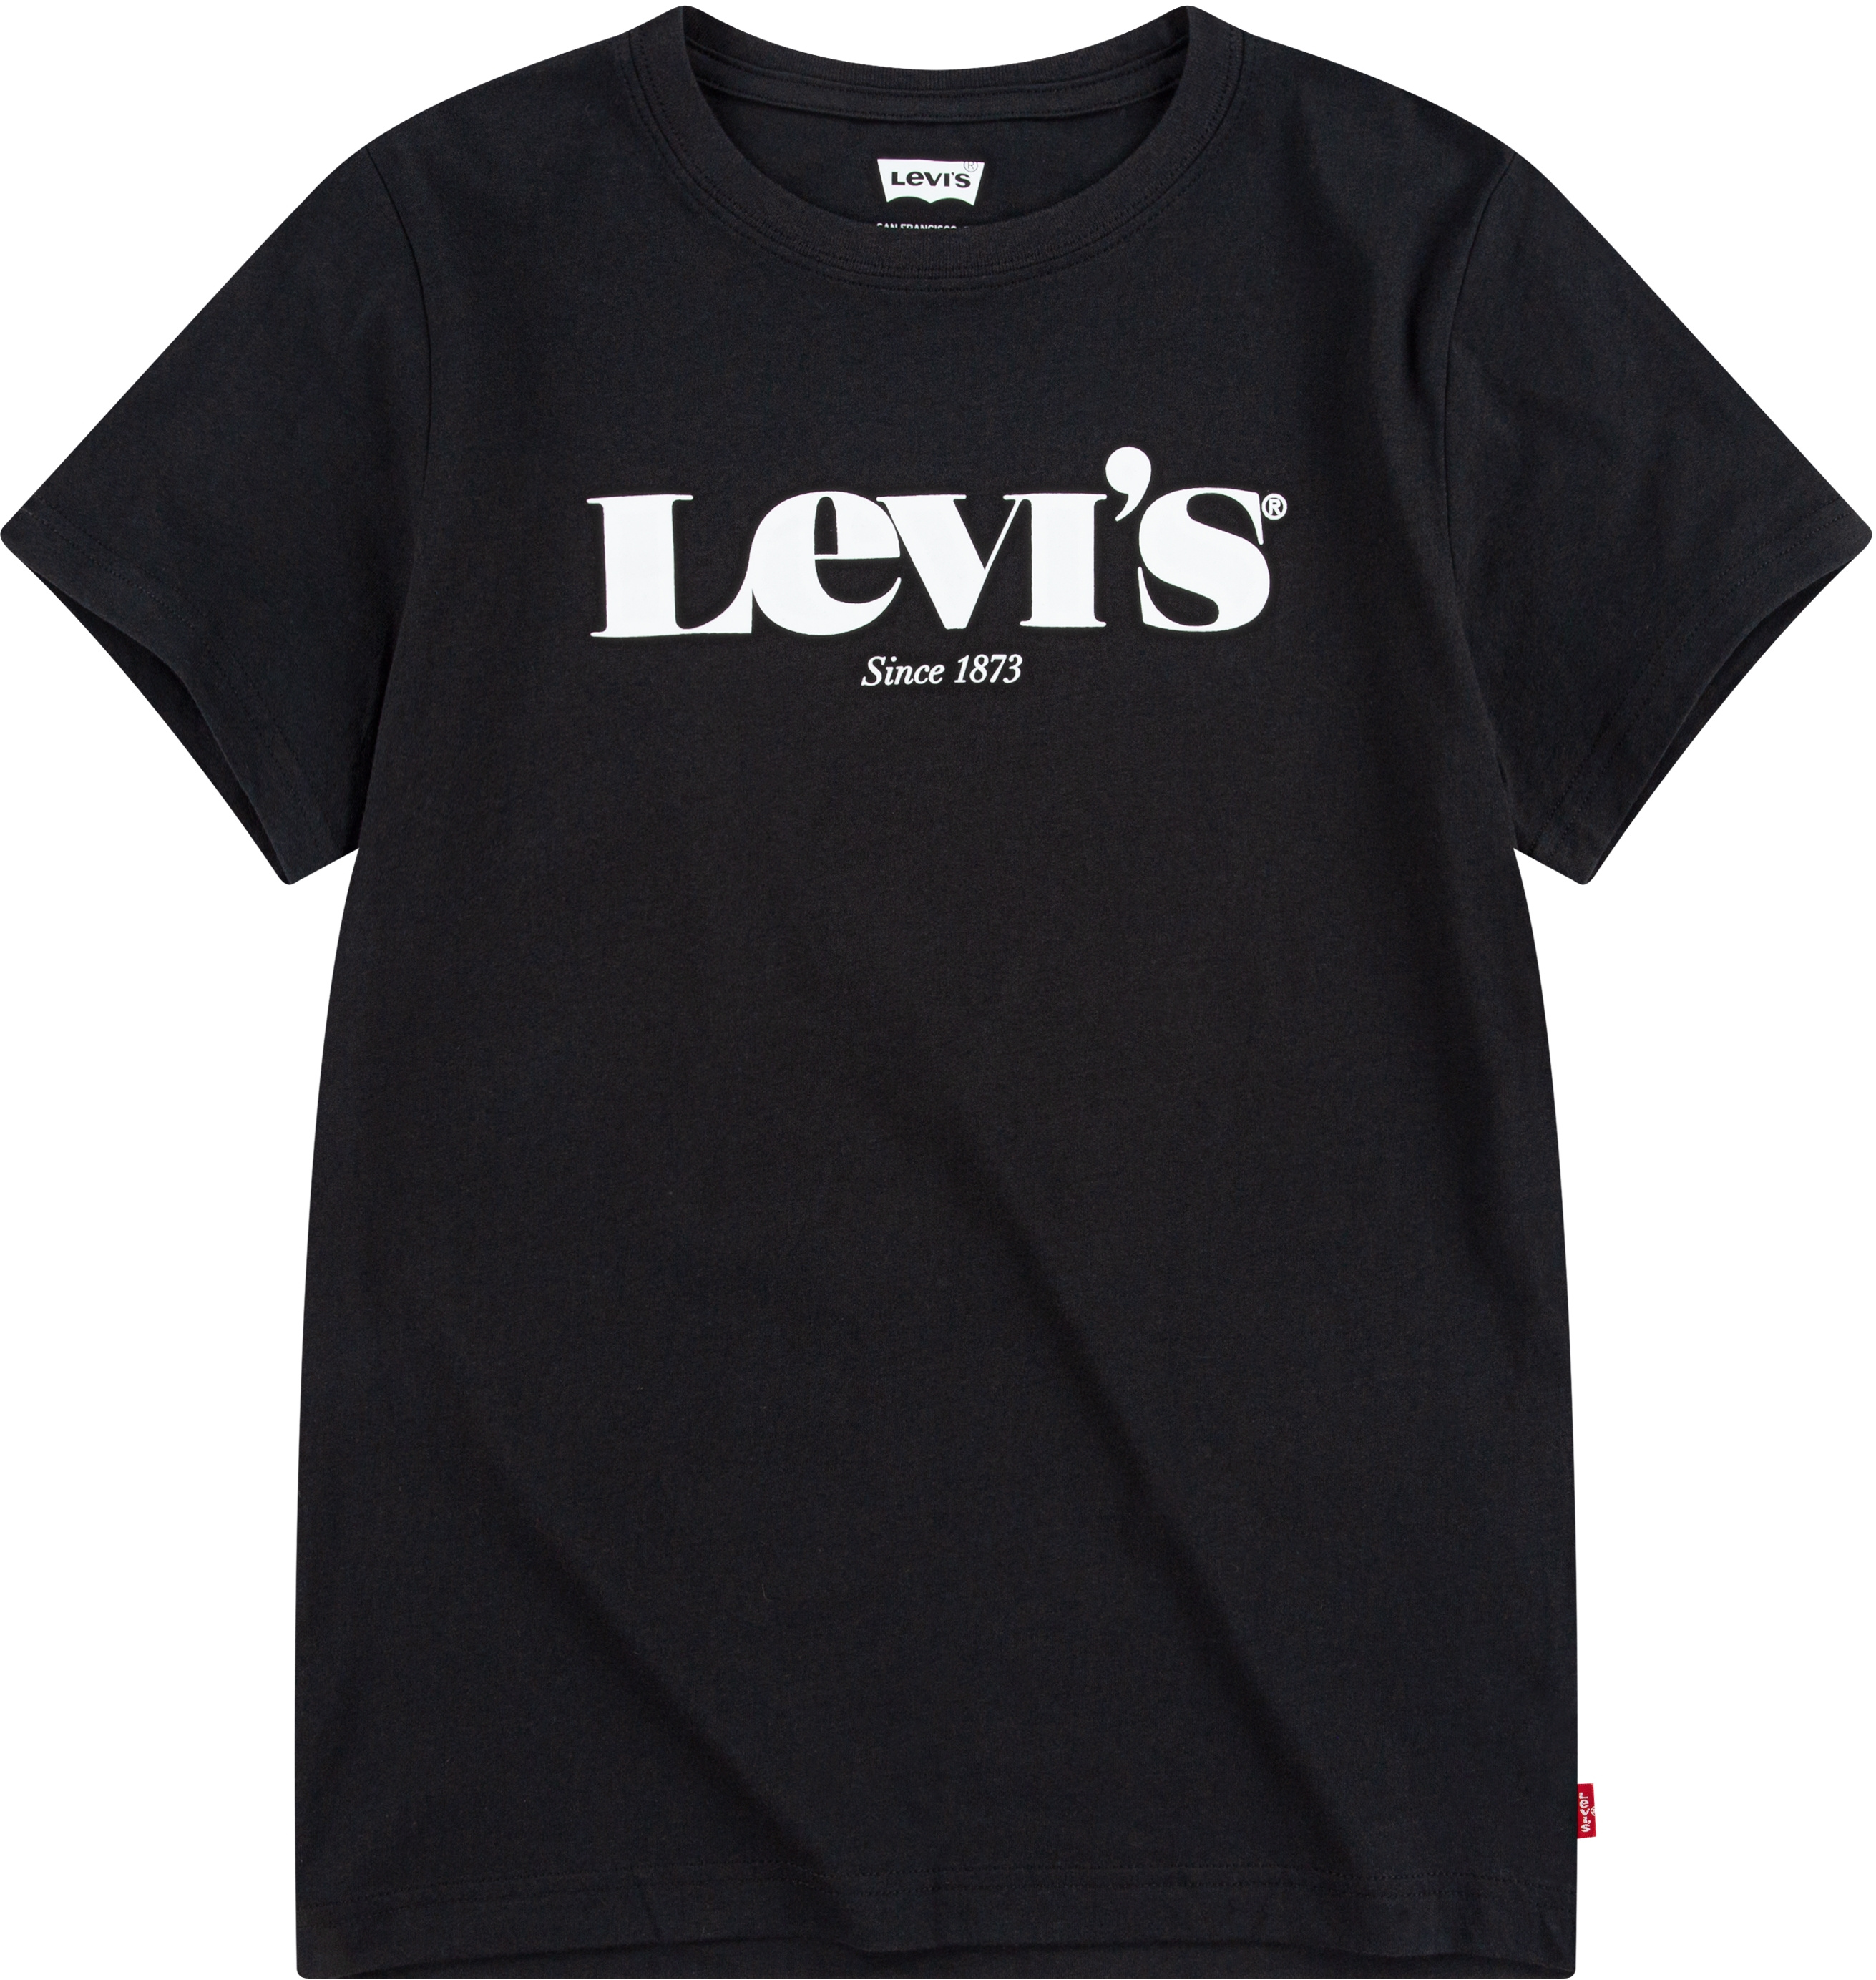 Футболка для детей Levi's с коротким рукавом и логотипом Levi's®